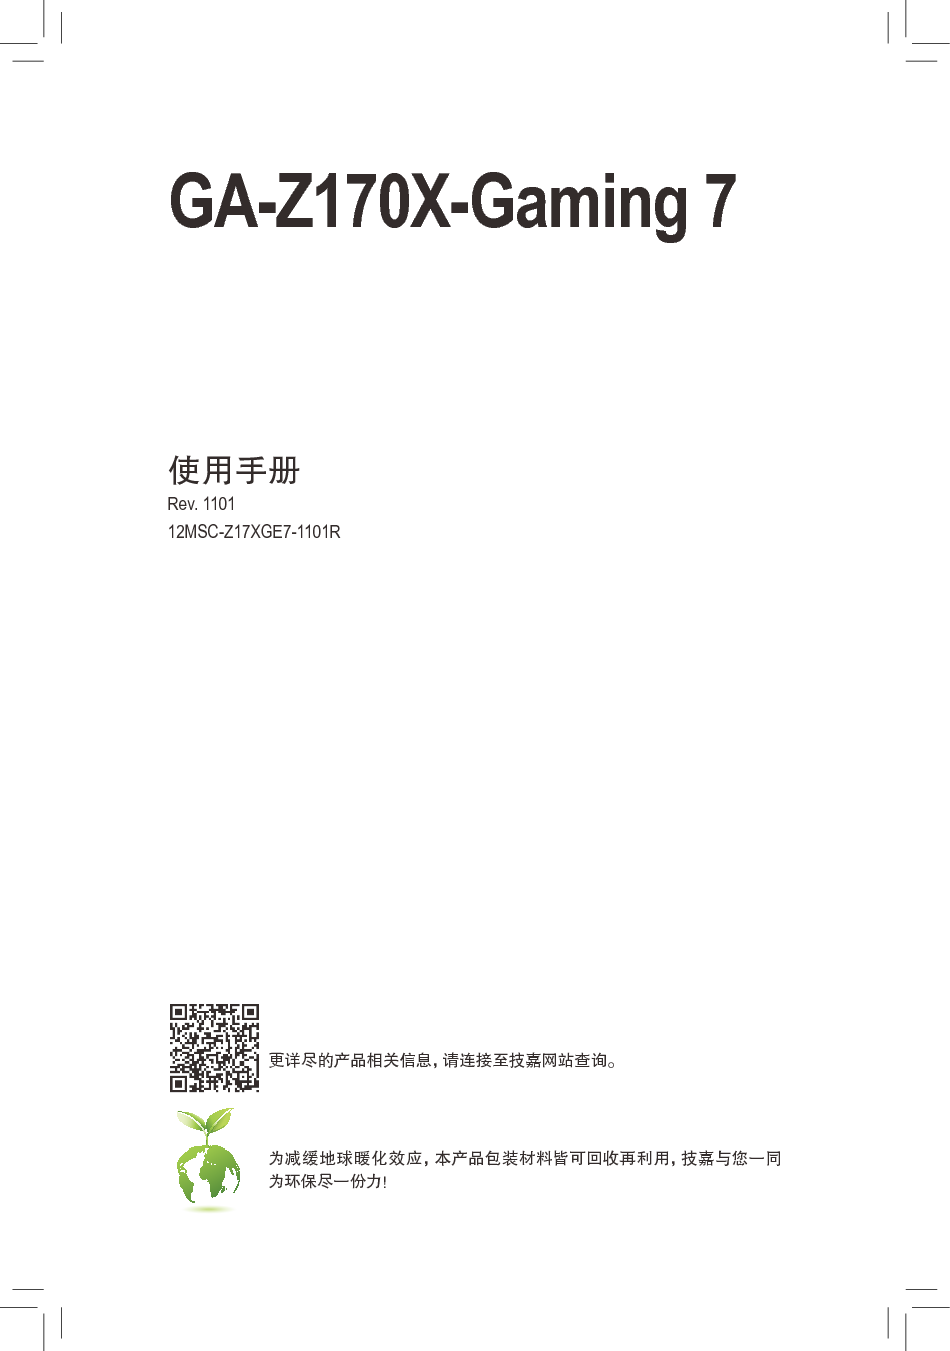 技嘉 Gigabyte GA-Z170X-Gaming 7 1101版 使用手册 封面